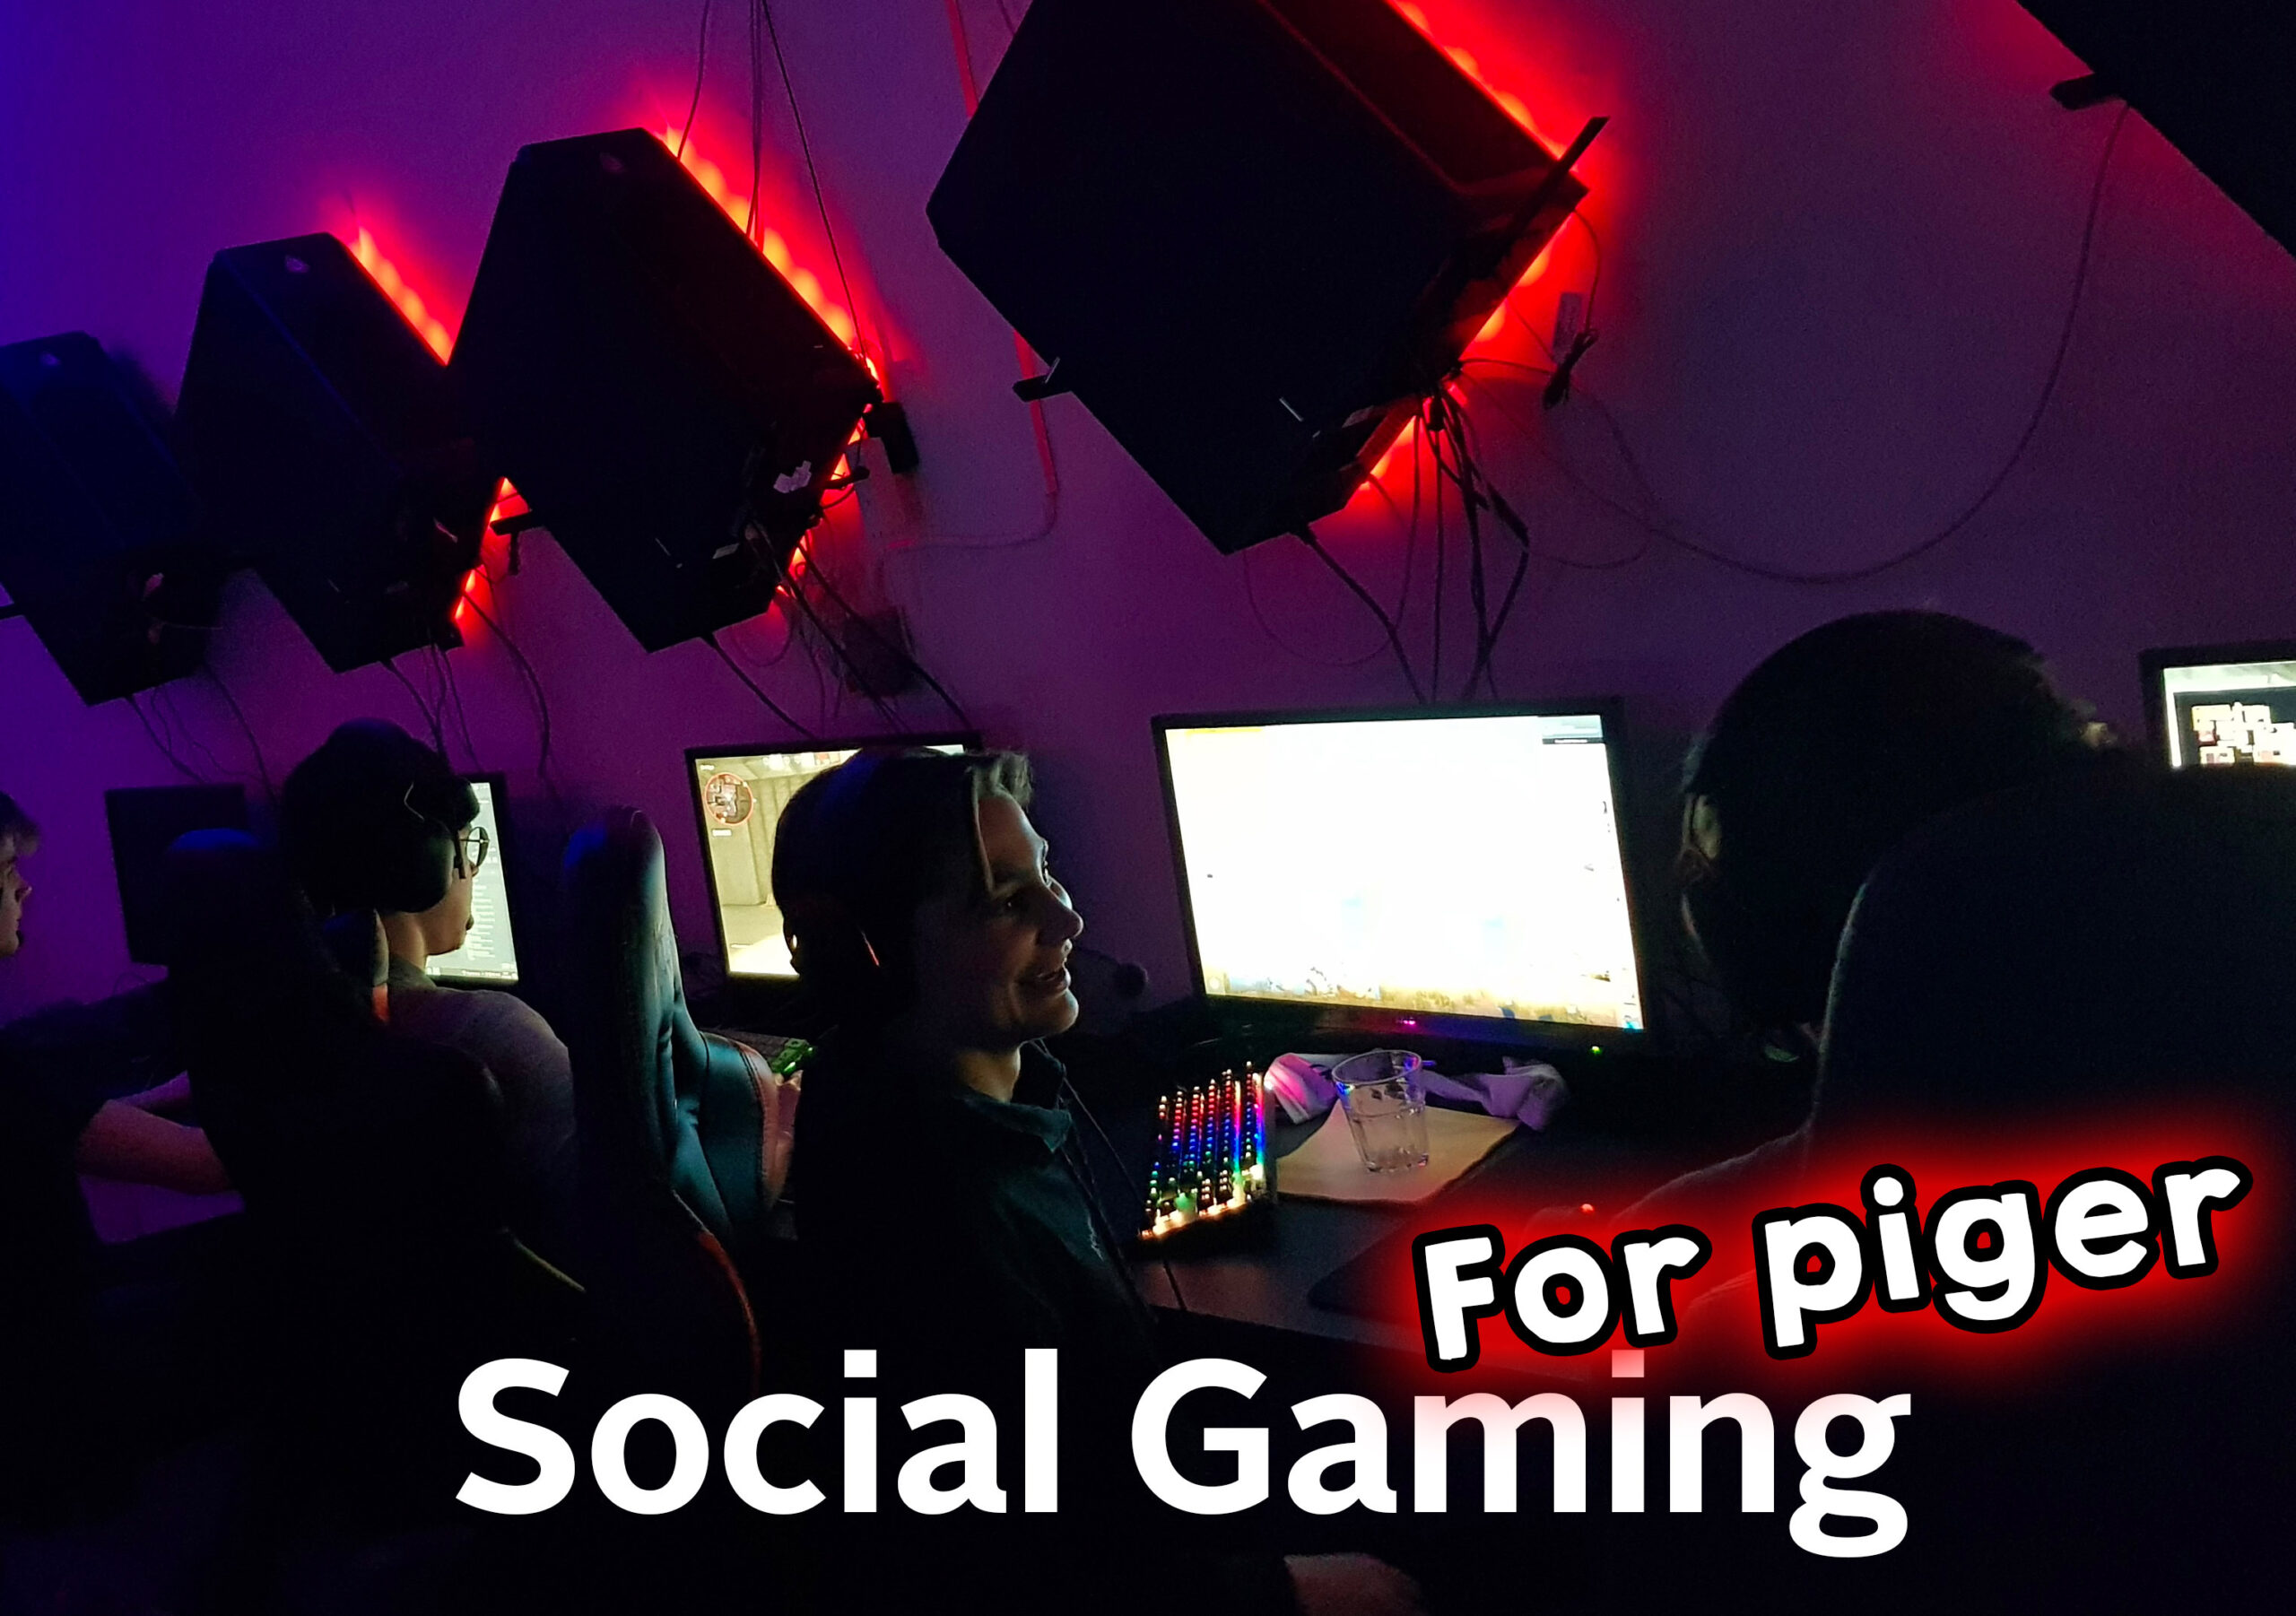 Social Gaming for piger – Mandage 17:00 til 20:00